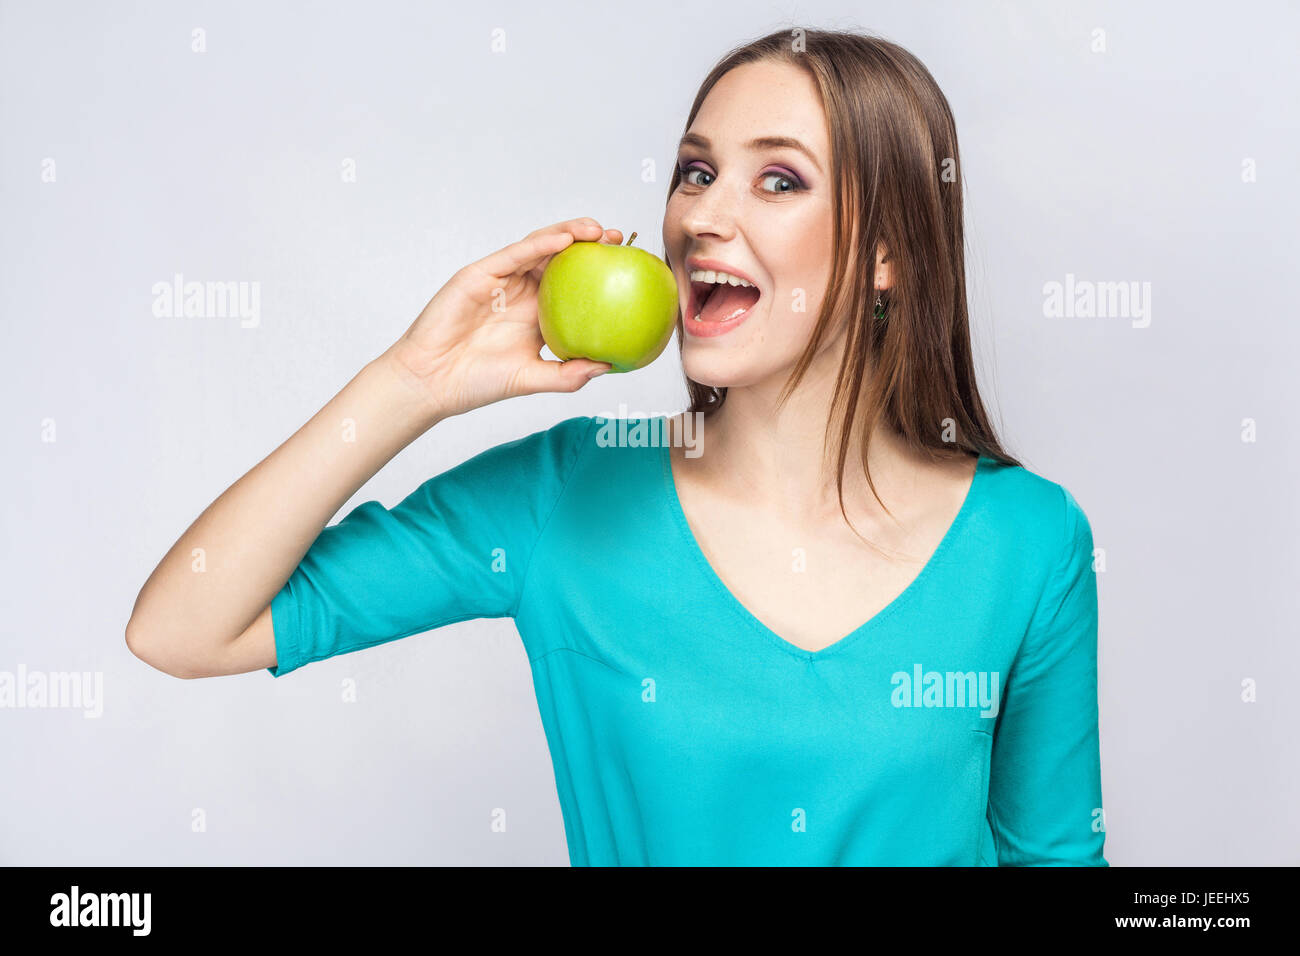 Belle jeune femme avec des taches de rousseur et robe vert pomme exploitation et l'alimentation looking at camera. studio shot, isolé sur fond gris clair. Banque D'Images